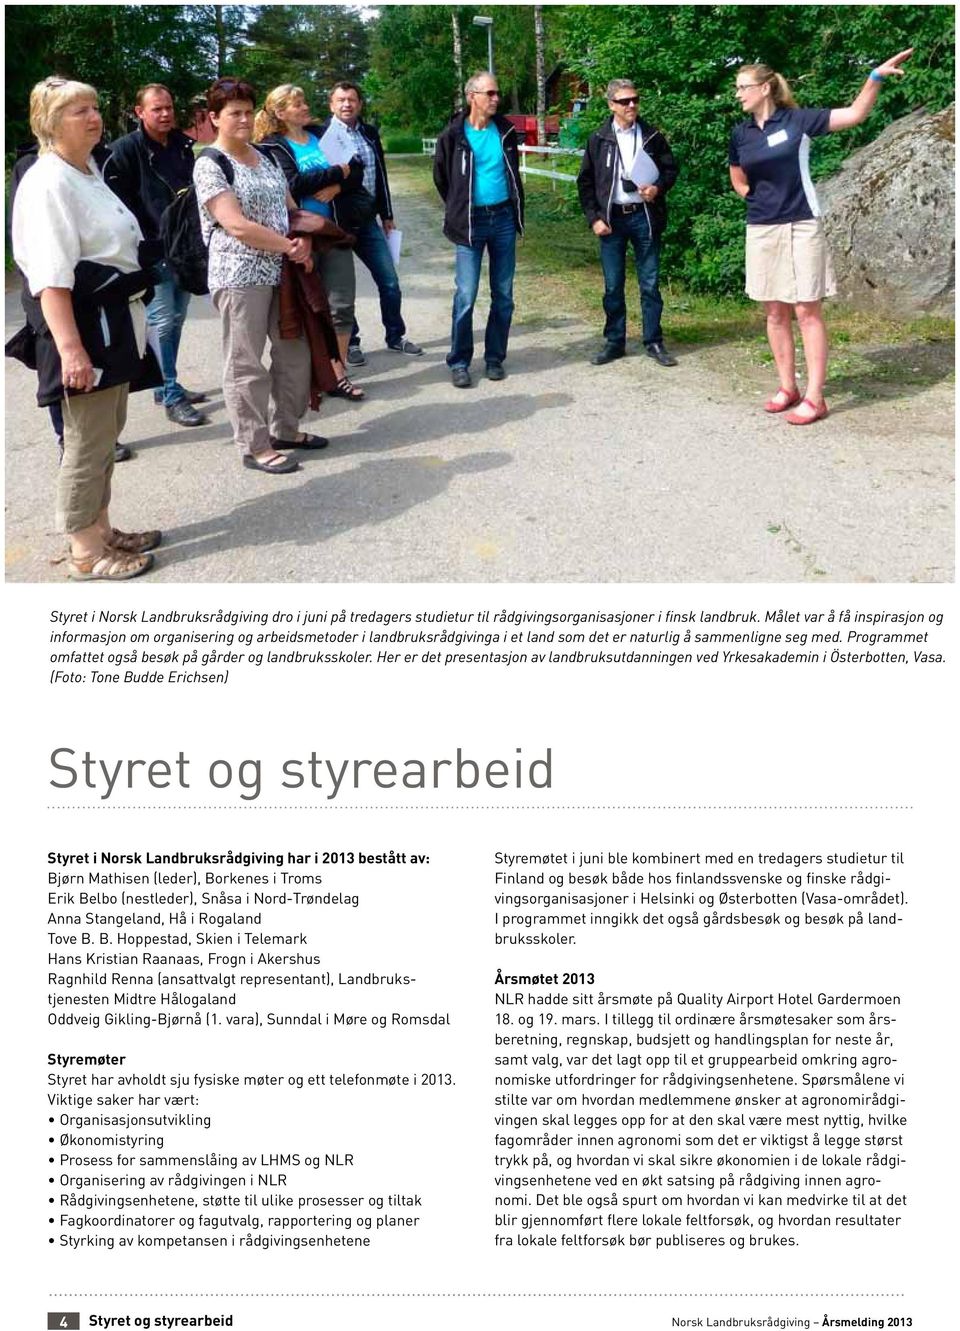 Programmet omfattet også besøk på gårder og landbruksskoler. Her er det presentasjon av landbruksutdanningen ved Yrkesakademin i Österbotten, Vasa.